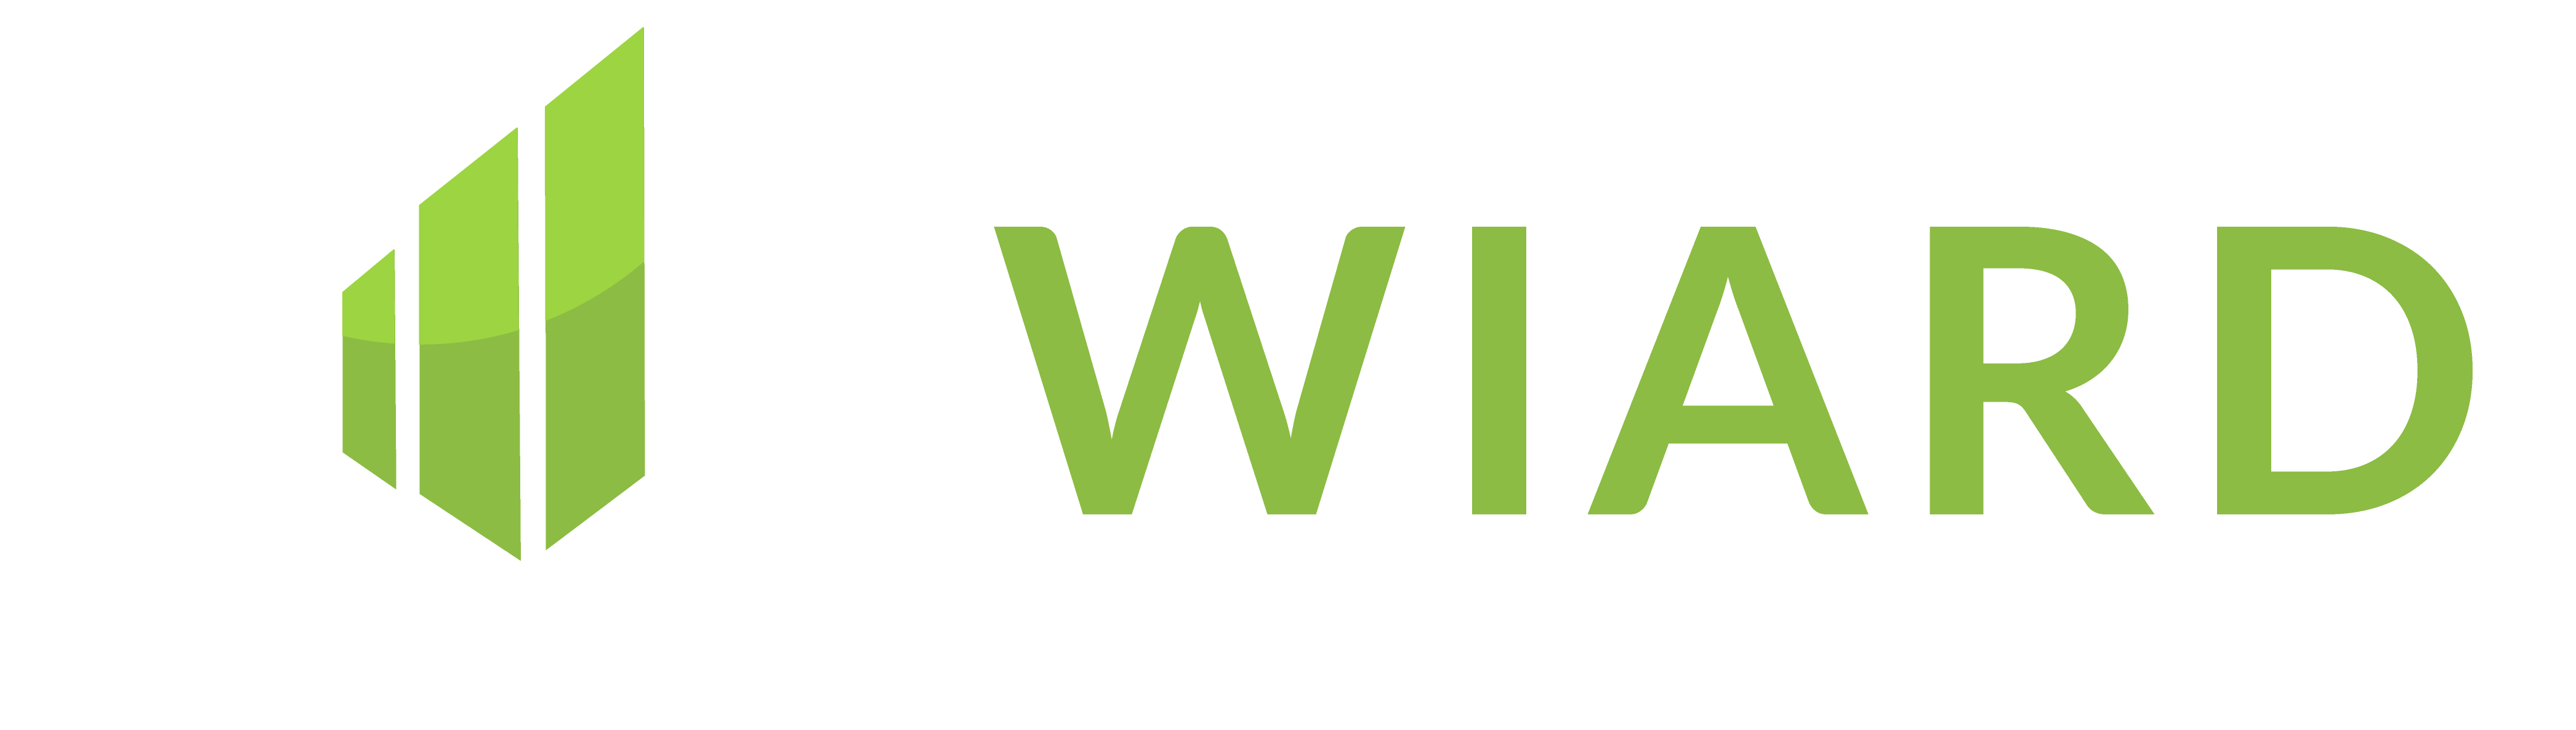 Wiard Witholt